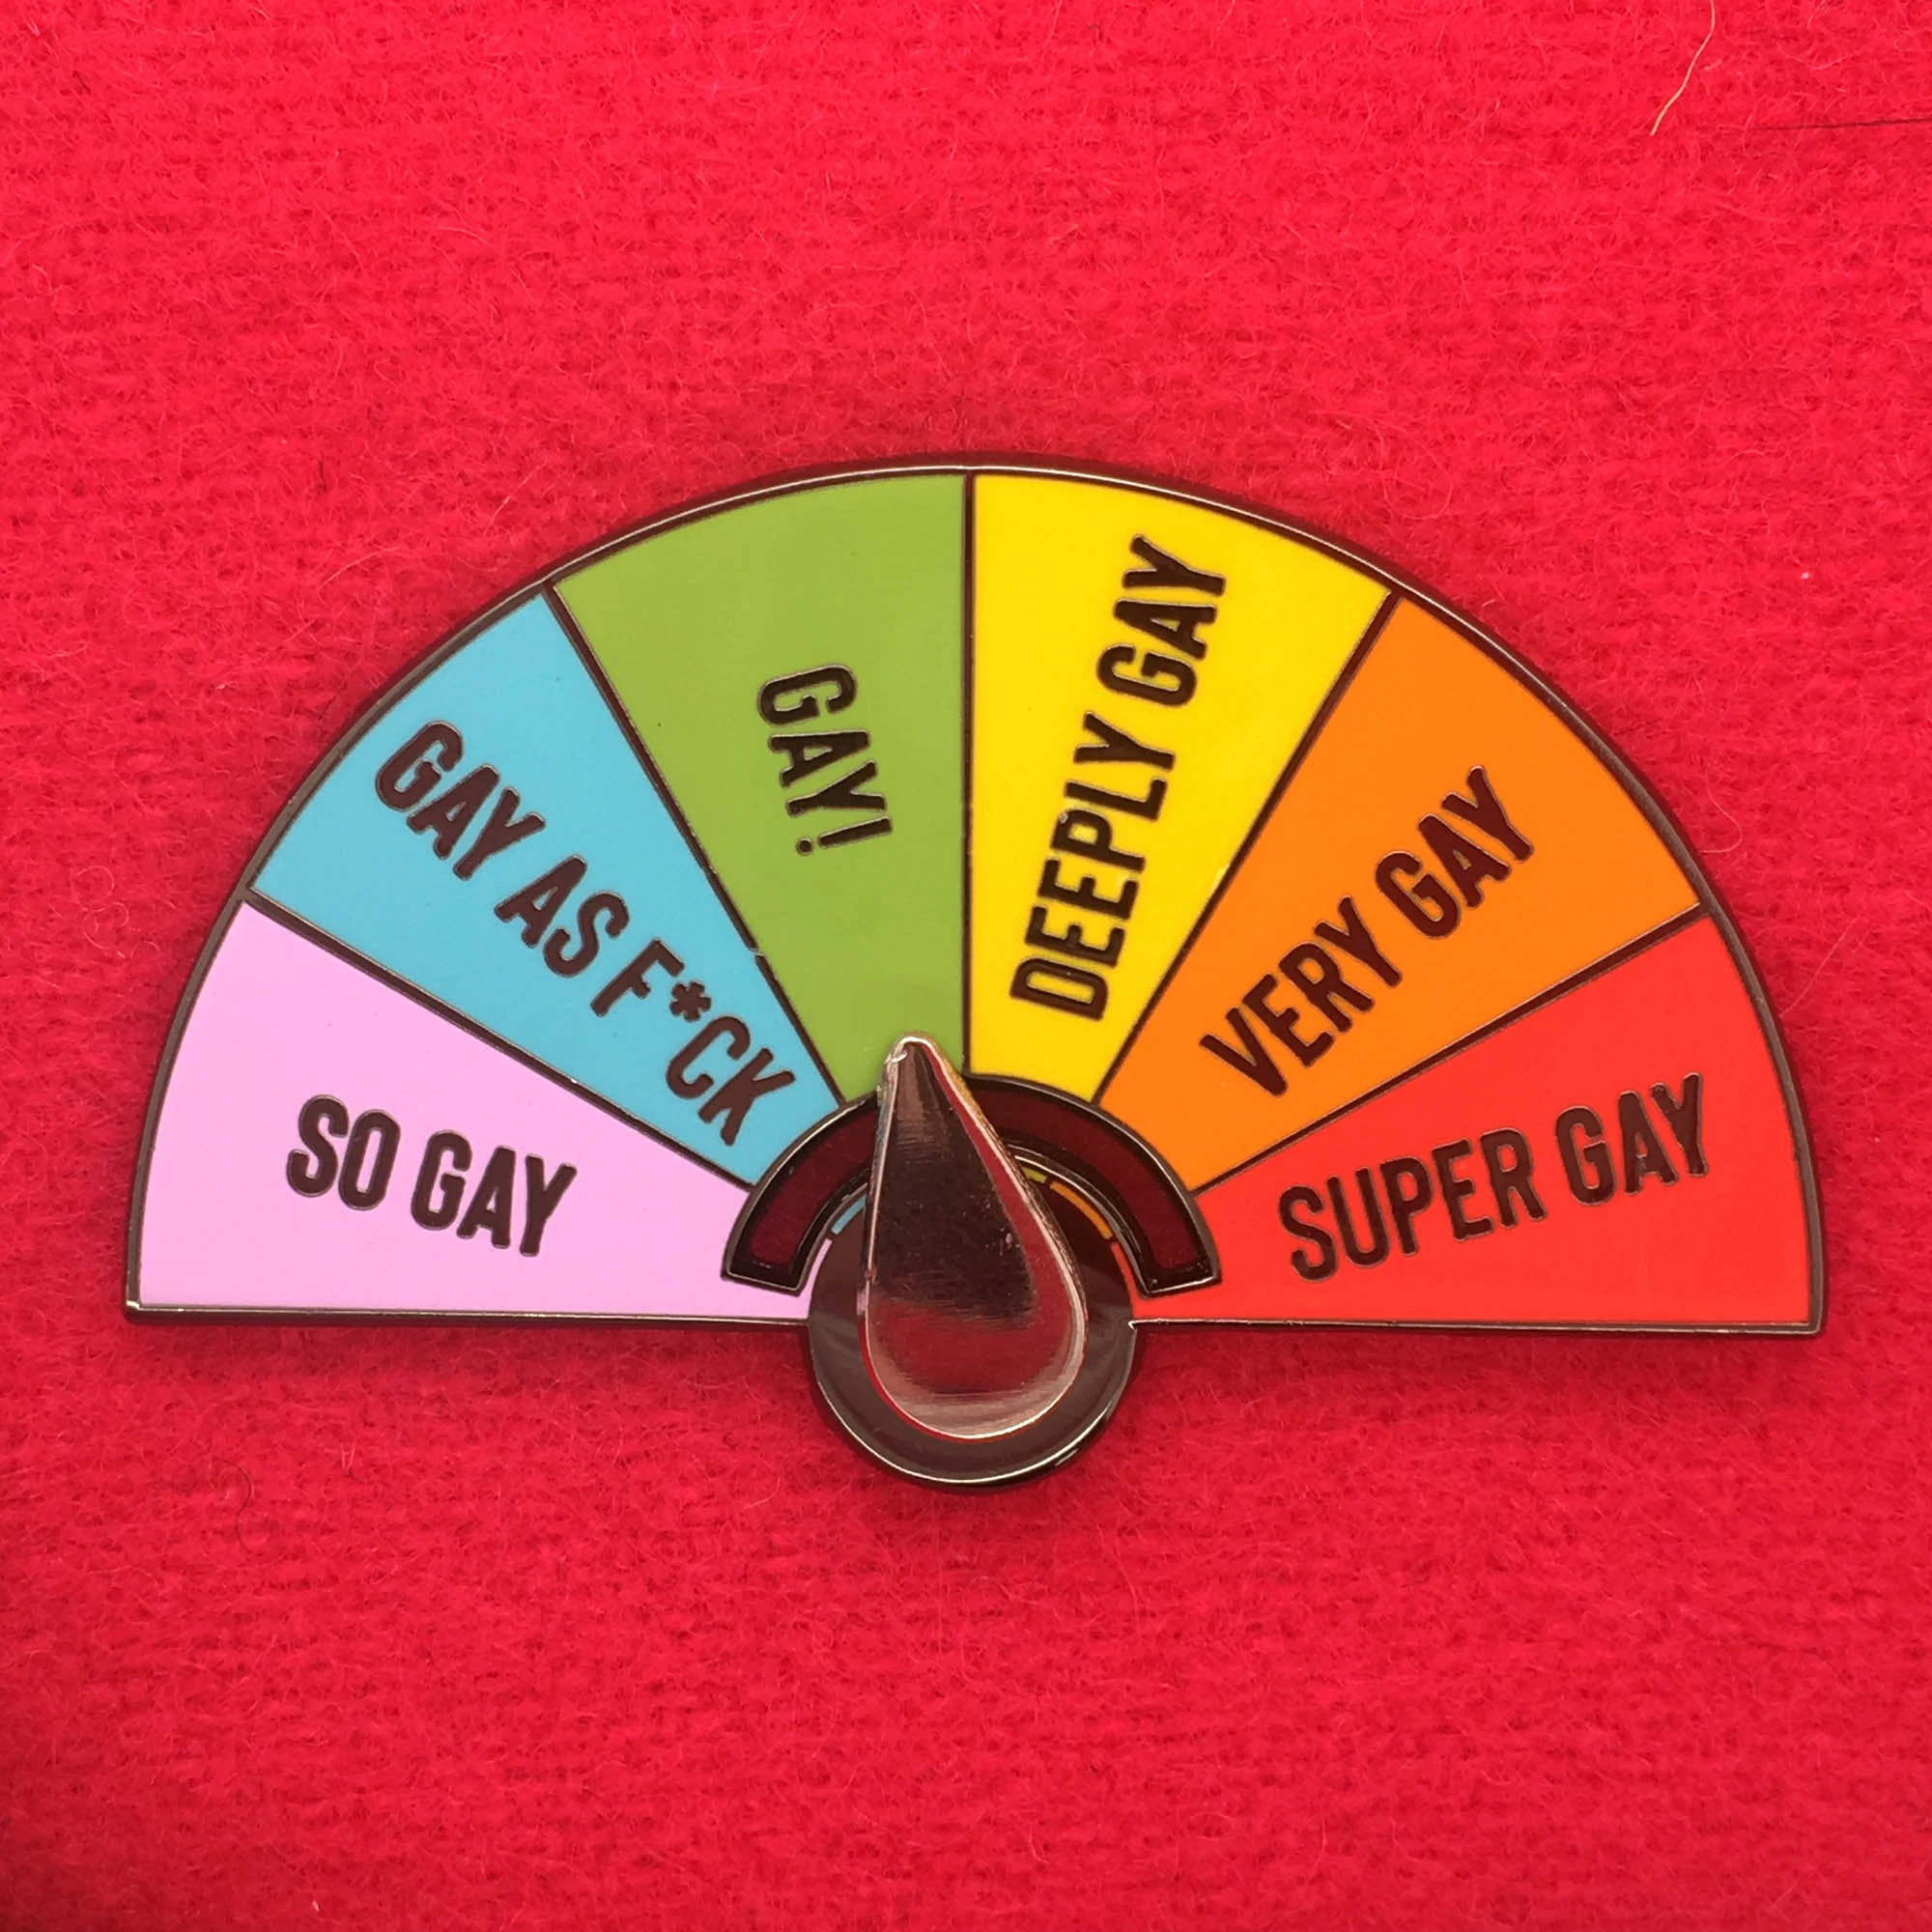 Super Gay! - Moving Pin